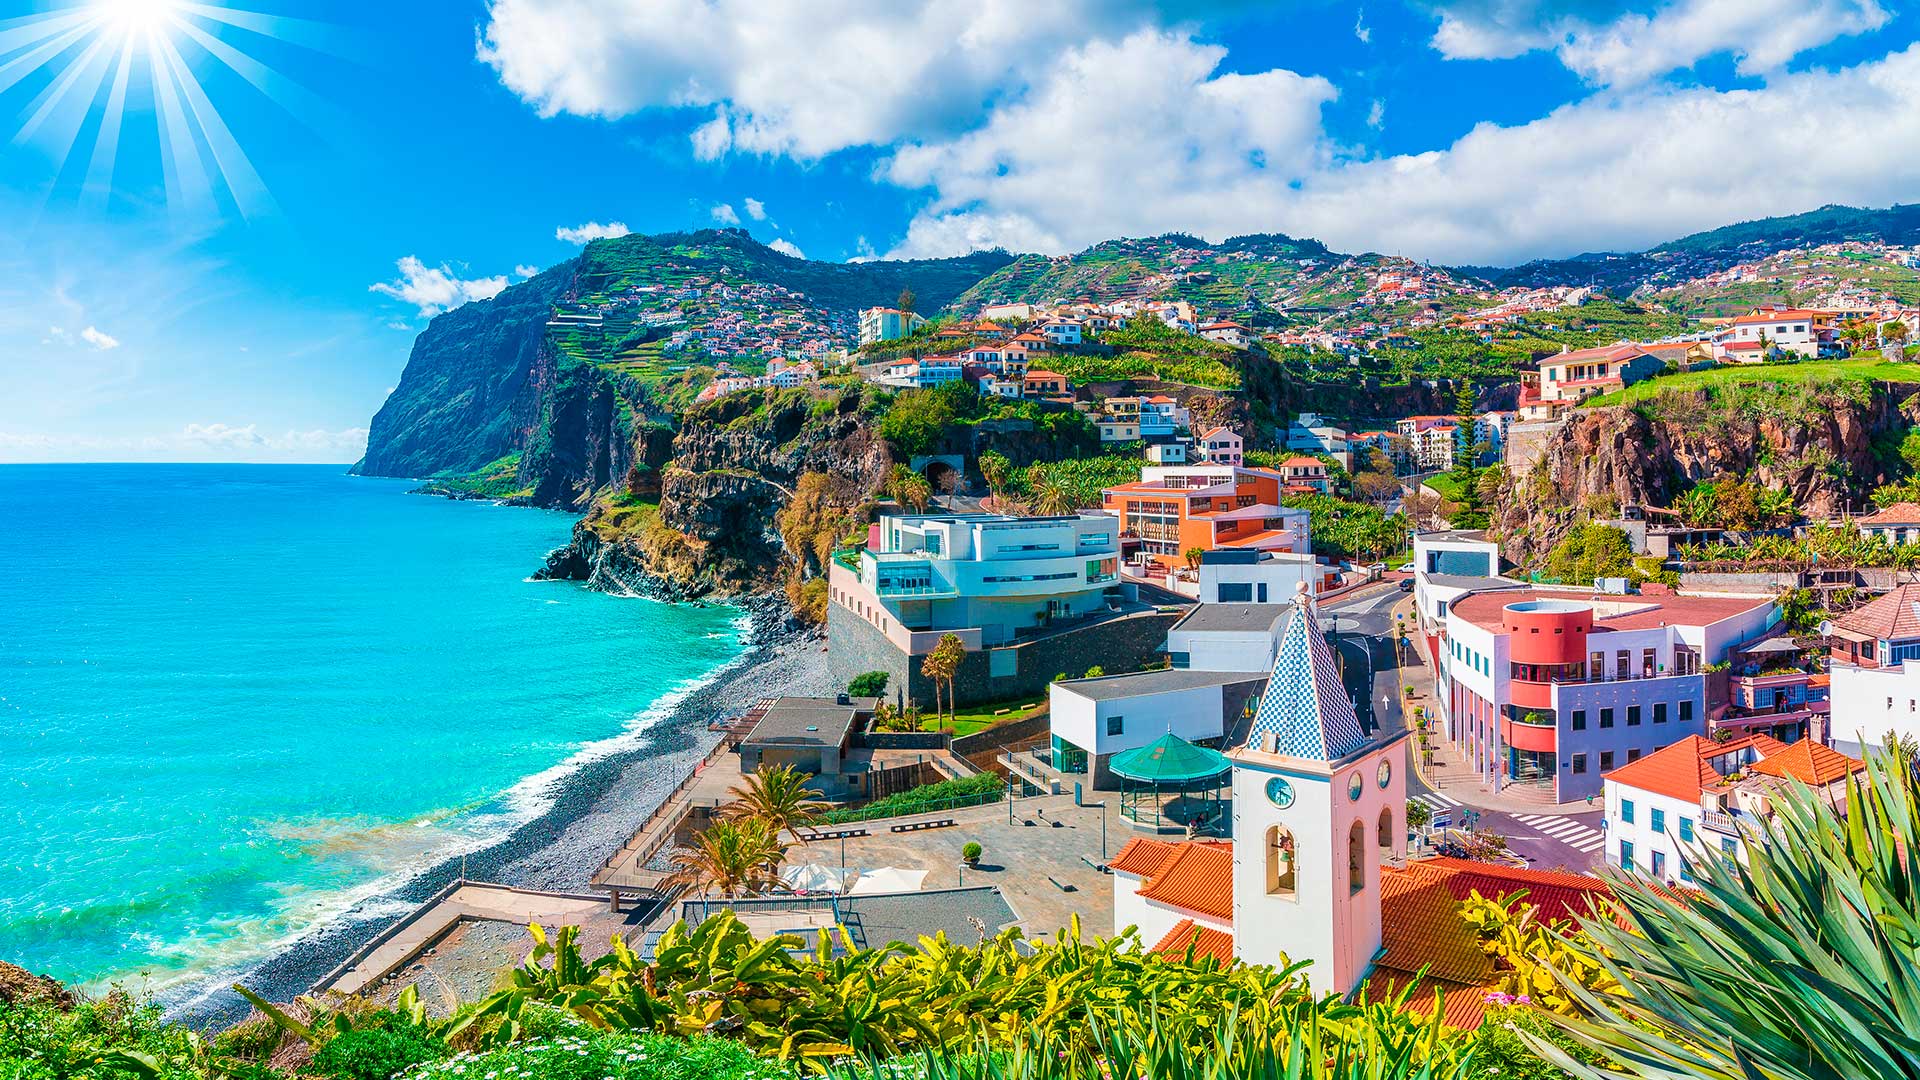 Мадейра, португальский остров, куда иностранцы могут переехать по беженству